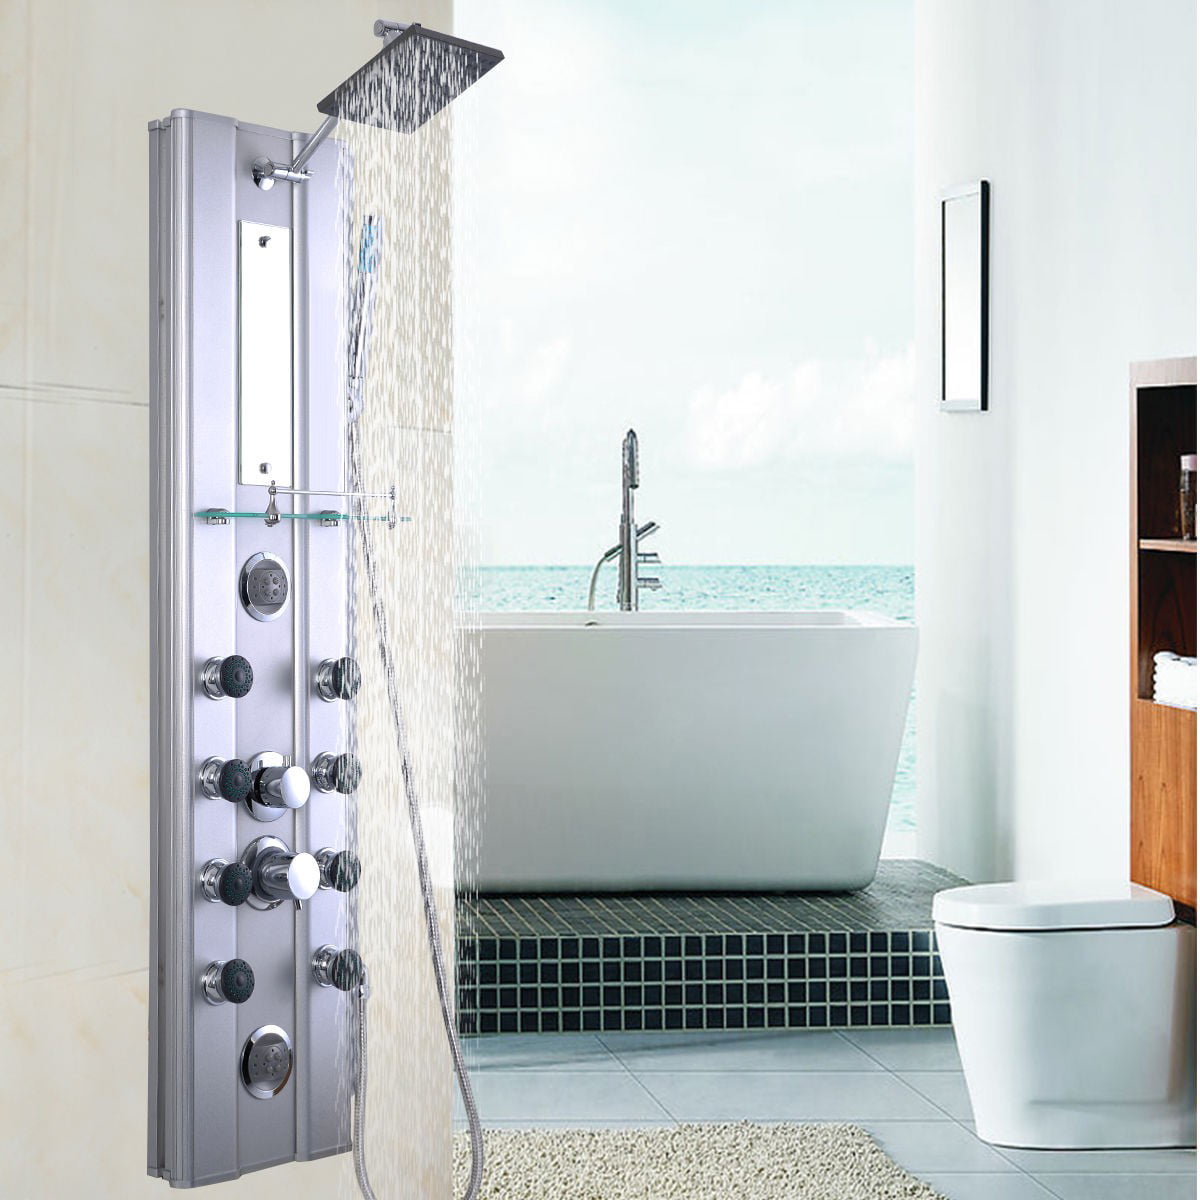 Aluminium Shower Panel Thermostatic WATERFALL MASSAGE RAIN SHOWER Black White 